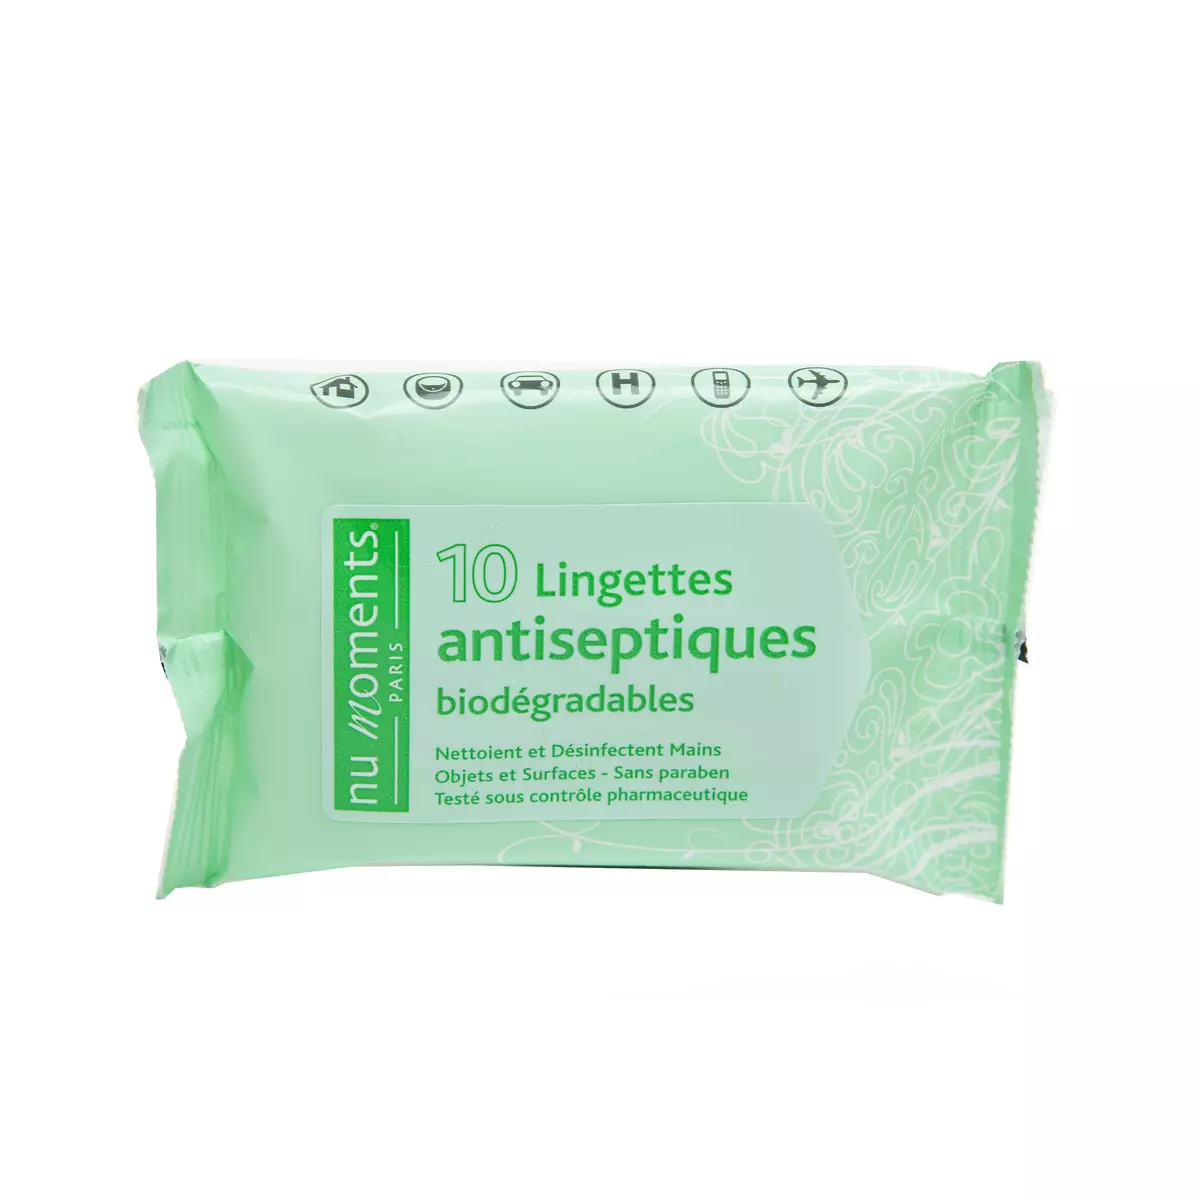 NU MOMENTS PARIS Lingettes antiseptiques biodégradables 10 lingettes